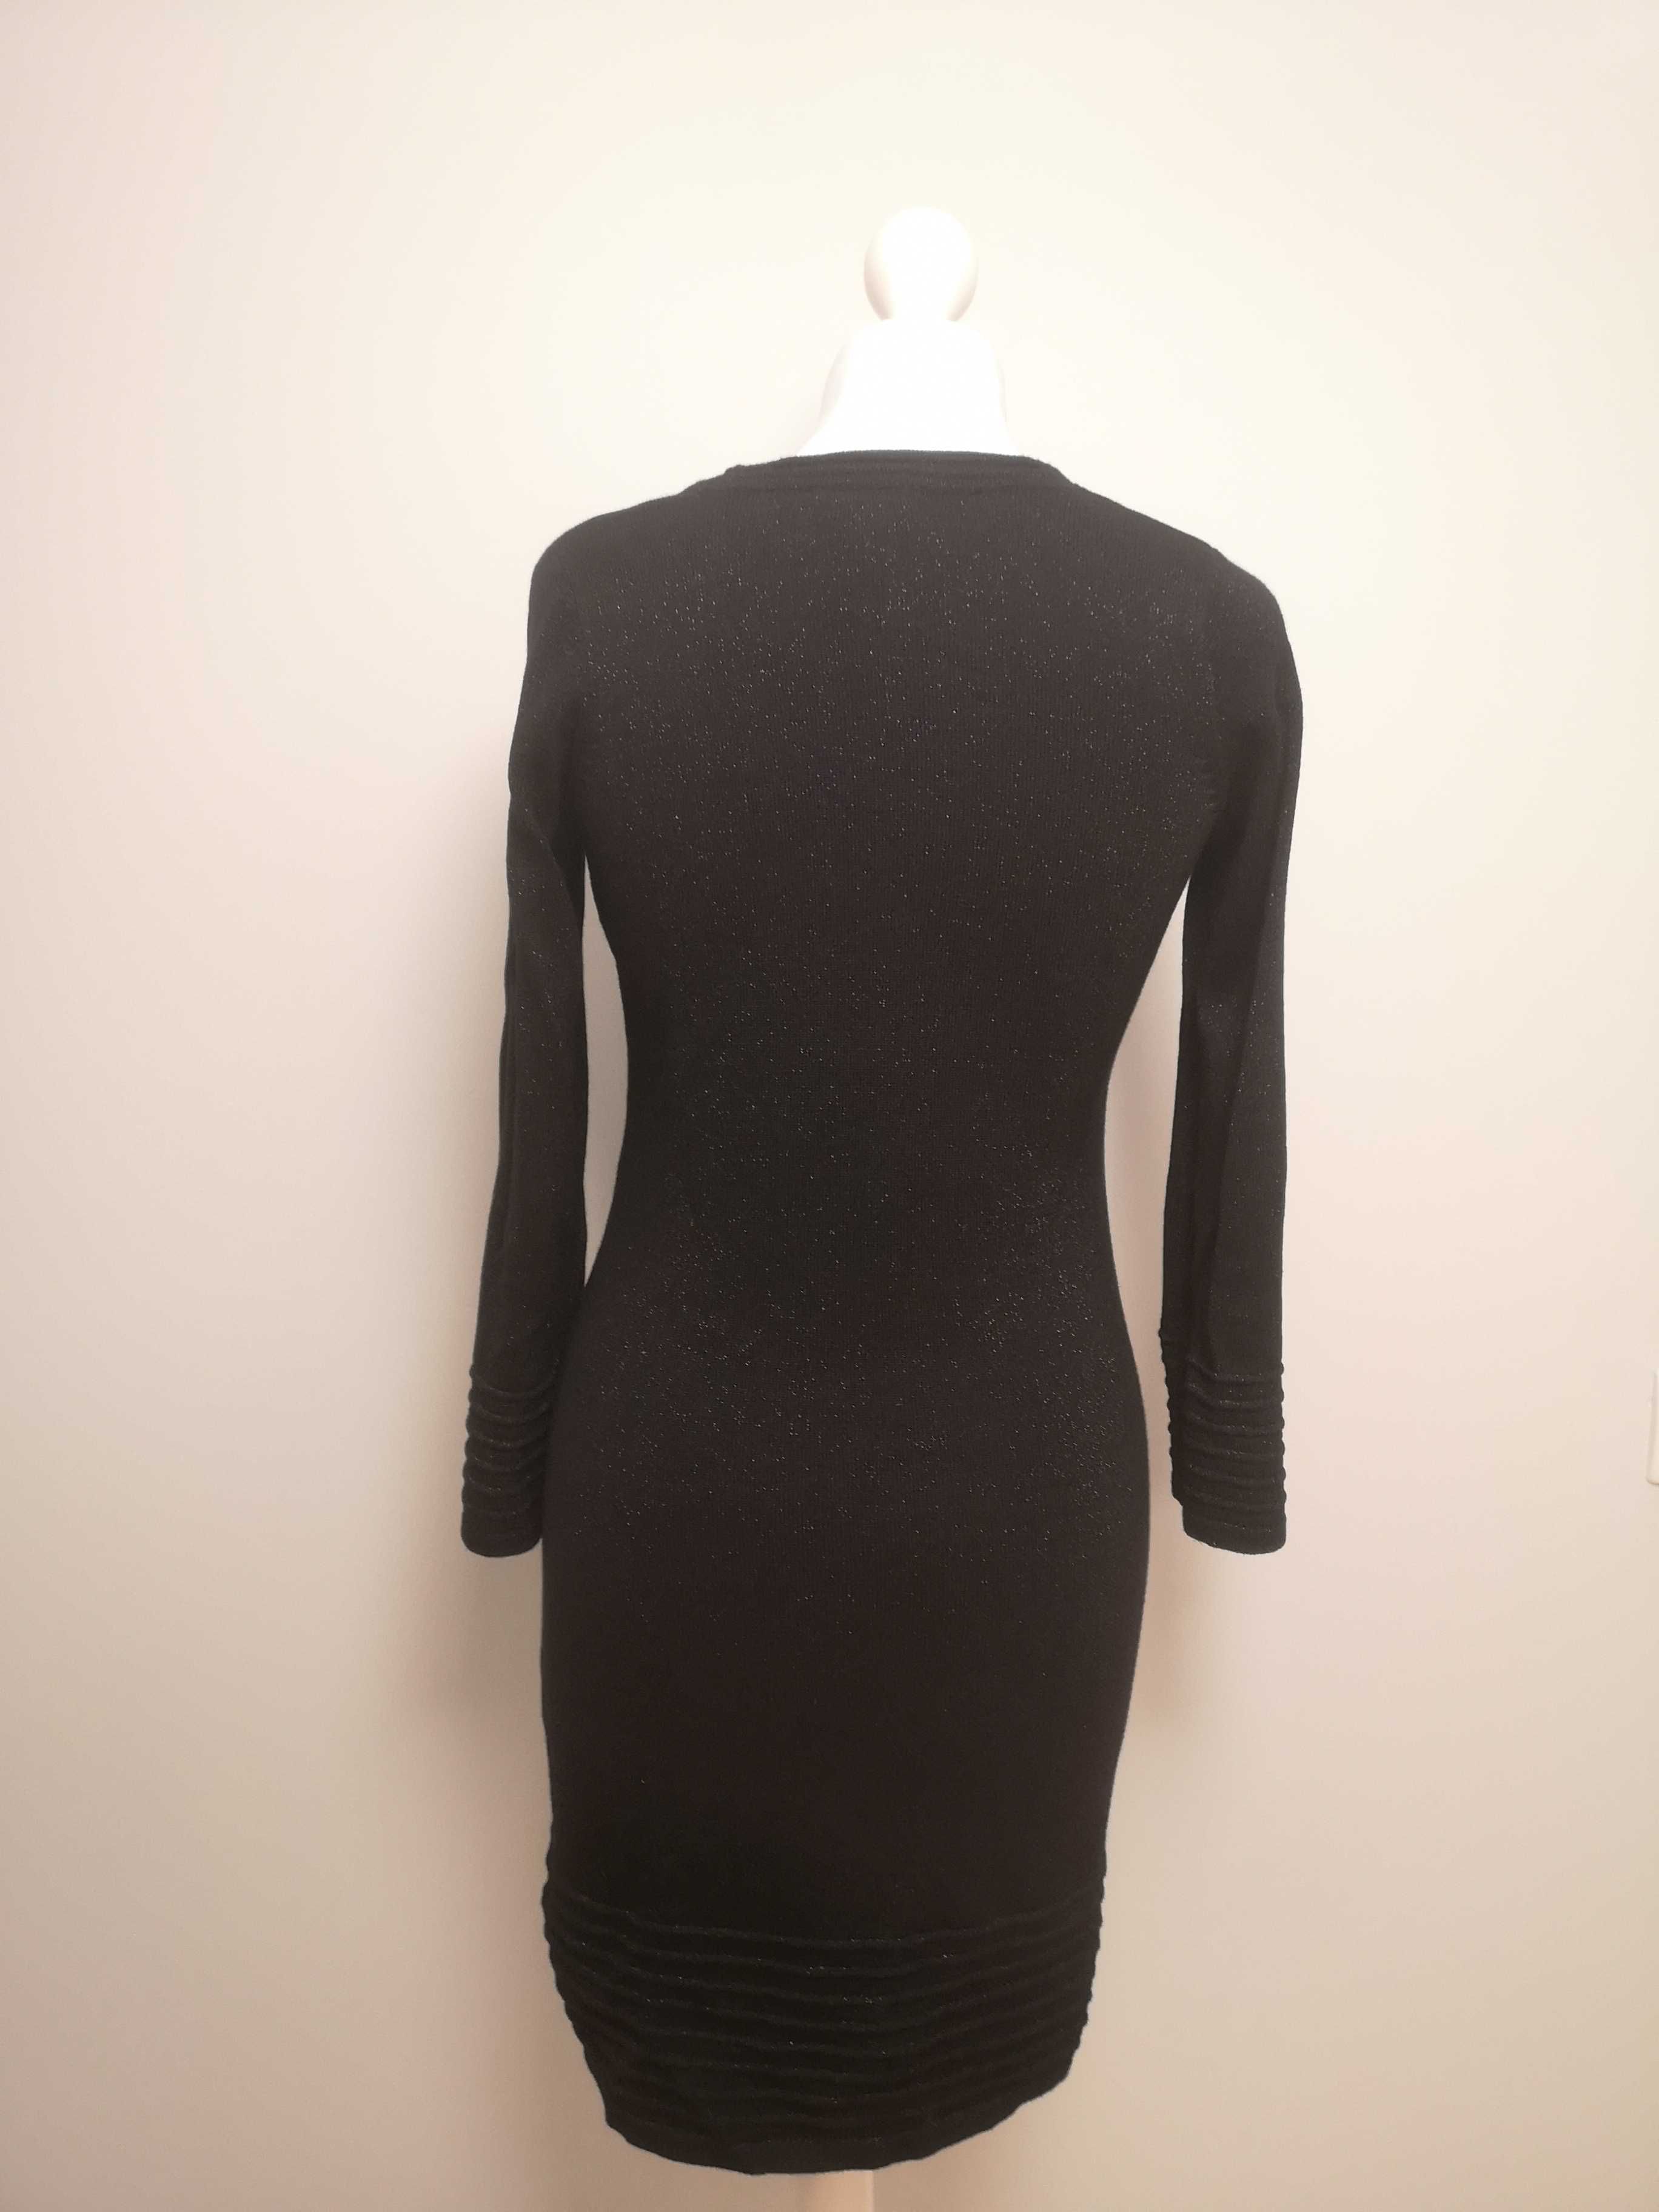 Sukienka czarna z metalizowaną nitką, długim rękawem. Rozmiar M